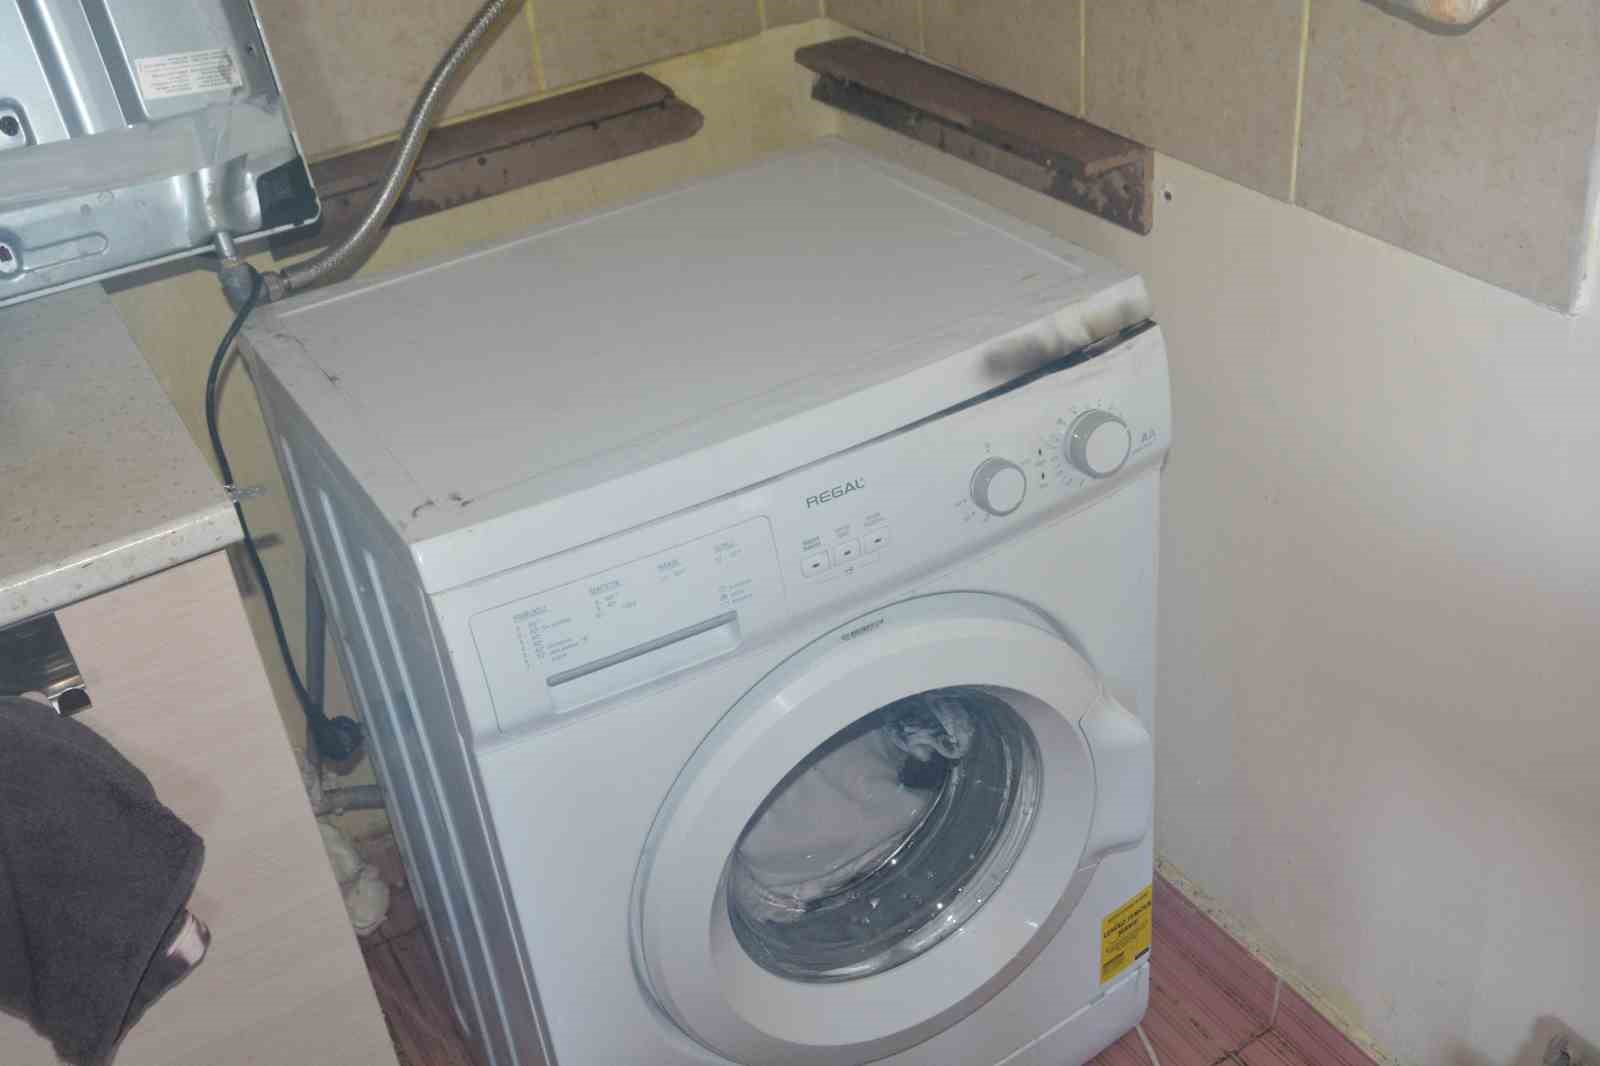 Alaca’da yalnız yaşayan yaşlı kadının evinde çamaşır makinasından yangın çıktı
